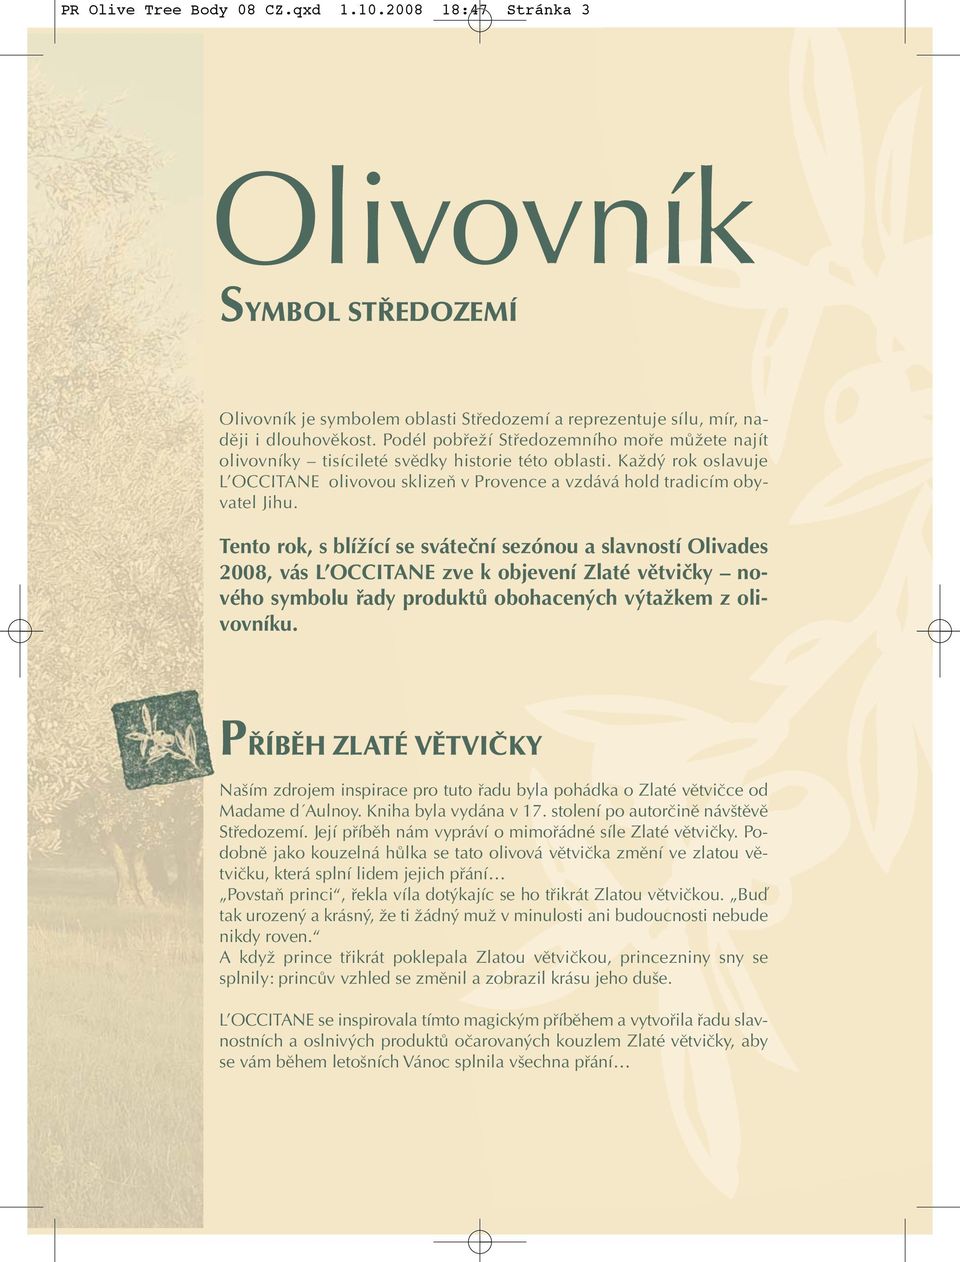 Tento rok, s blížící se sváteční sezónou a slavností Olivades 2008, vás L OCCITANE zve k objevení Zlaté větvičky nového symbolu řady produktů obohacených výtažkem z olivovníku.